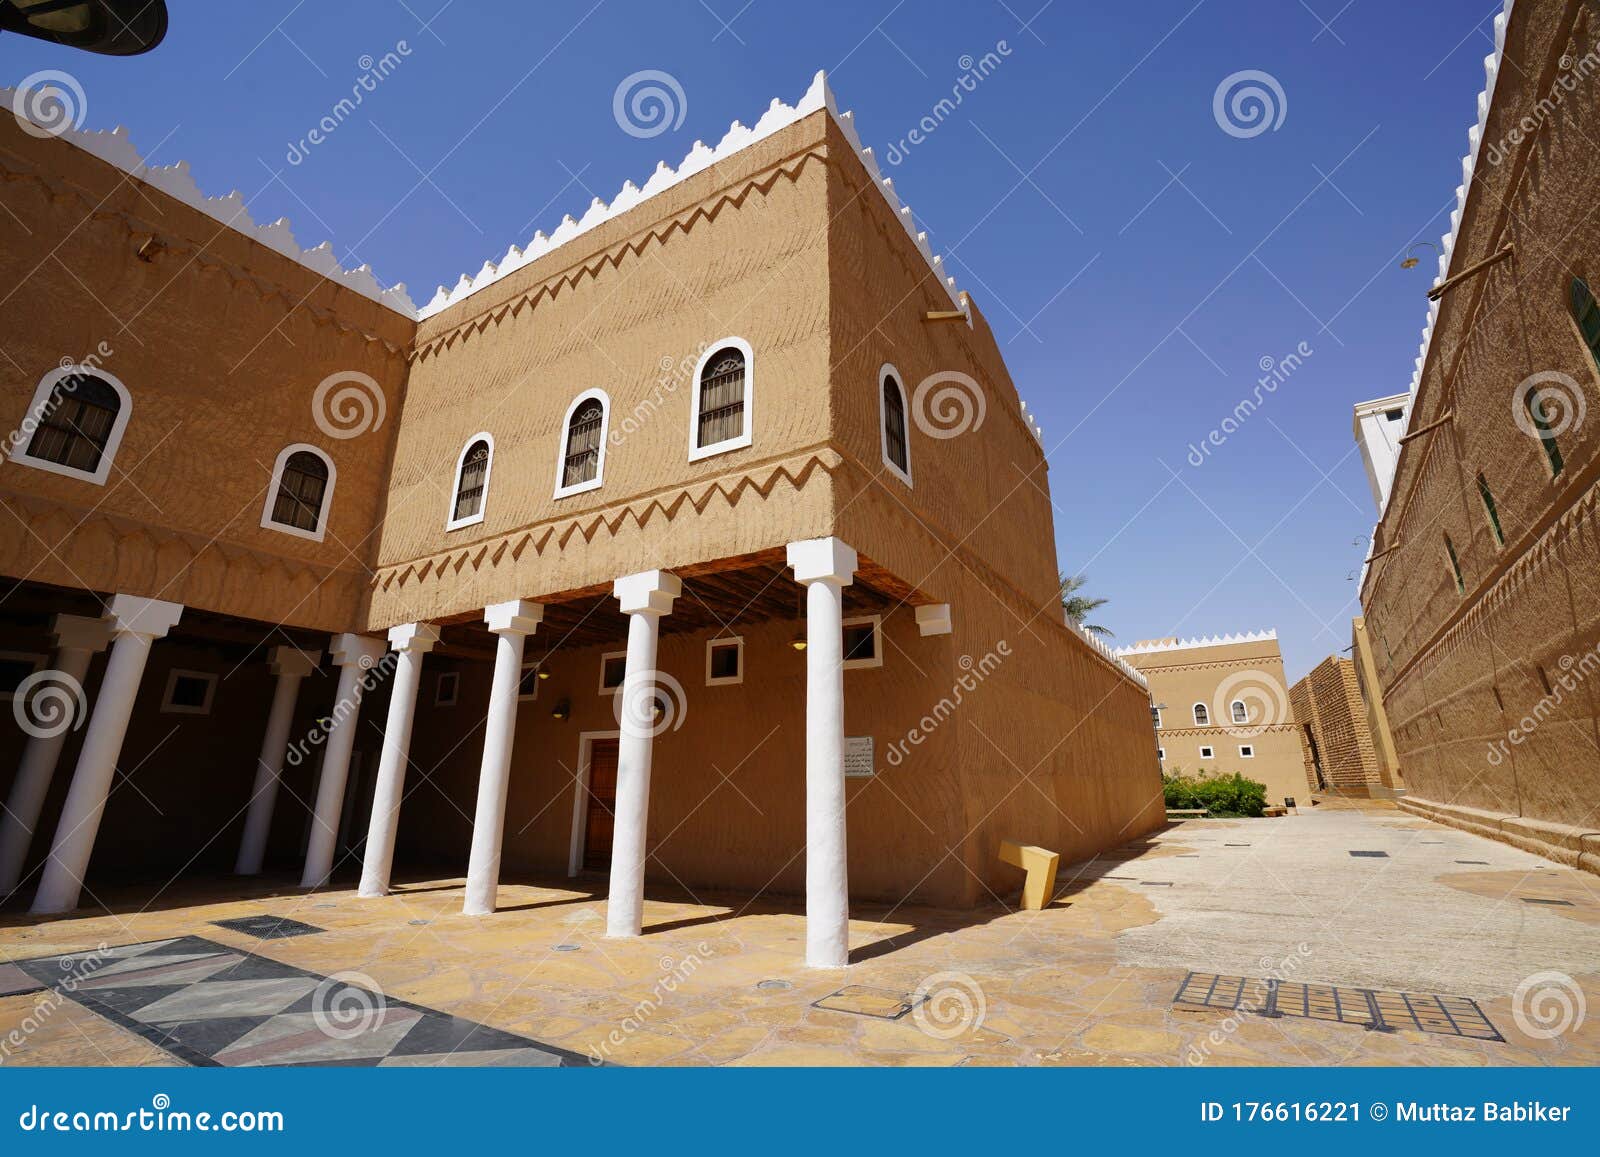 the murabba palace qasr al murabba